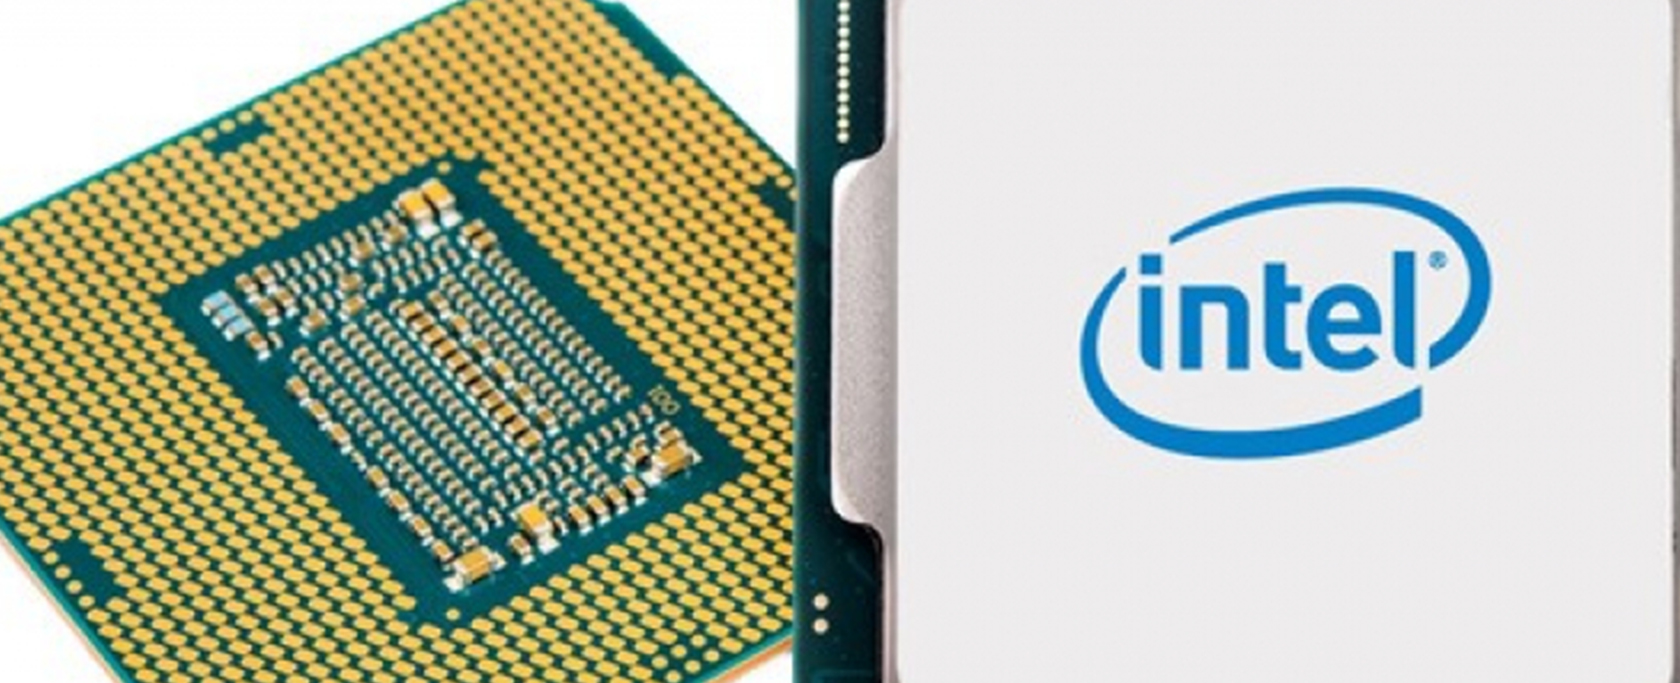 Intel Core i7-8700k: conheça o processador dos sonhos para os gamers